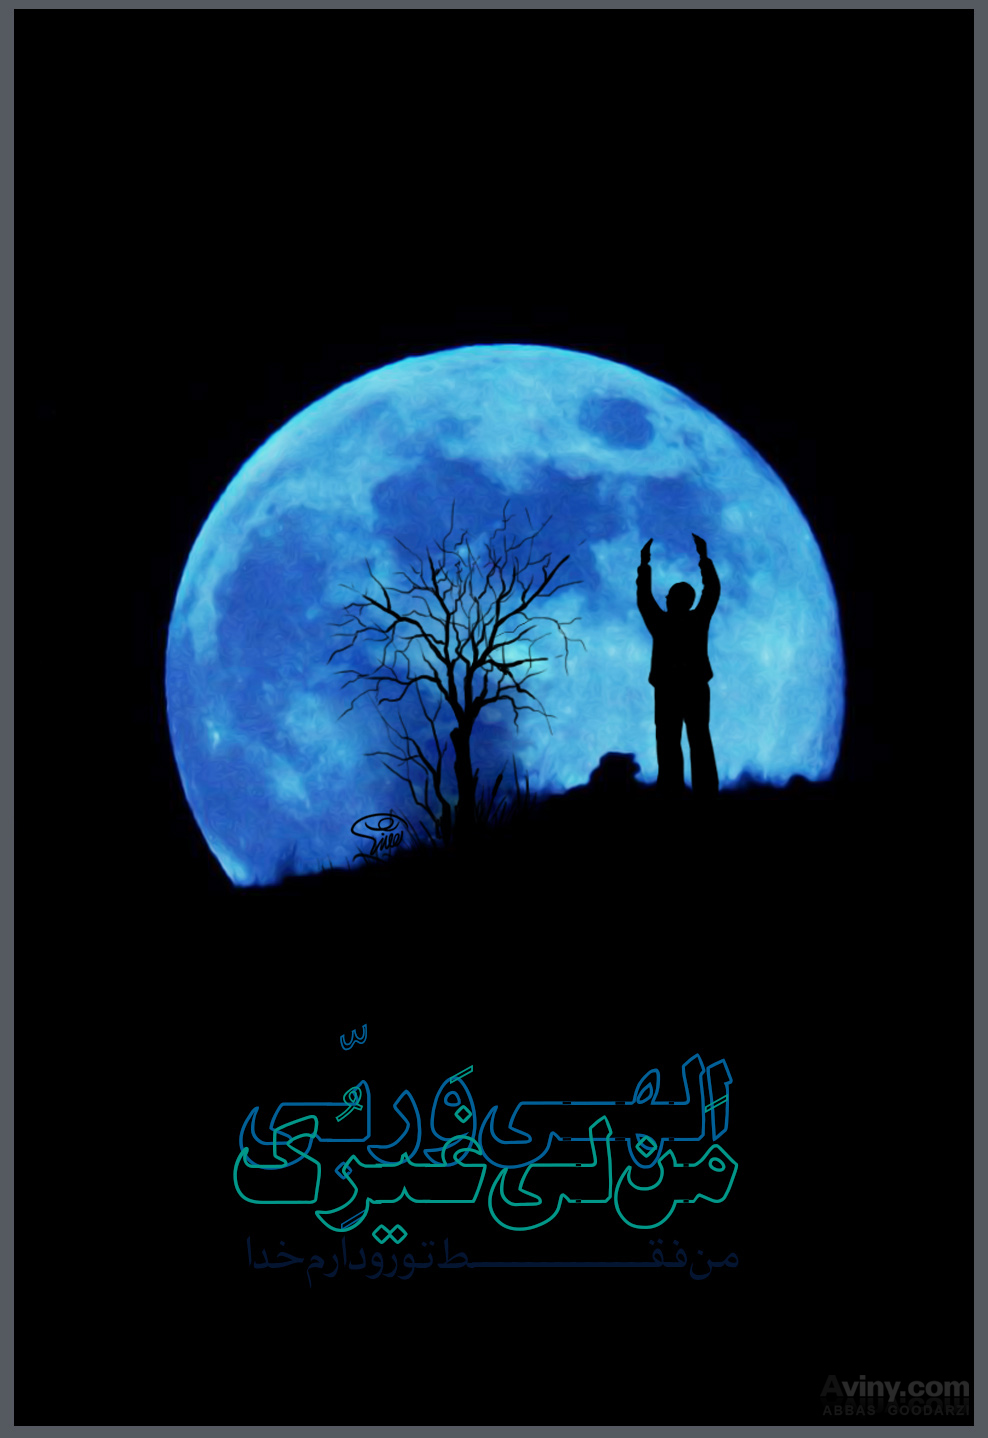 پوستر,دانلود پوستر,ماه رمضان,دعای کمیل,دعا,عکس پوستر,کمیل,رمضان,فقیر,الهی,ماه,آسمان,شب,تاریکی,پسر